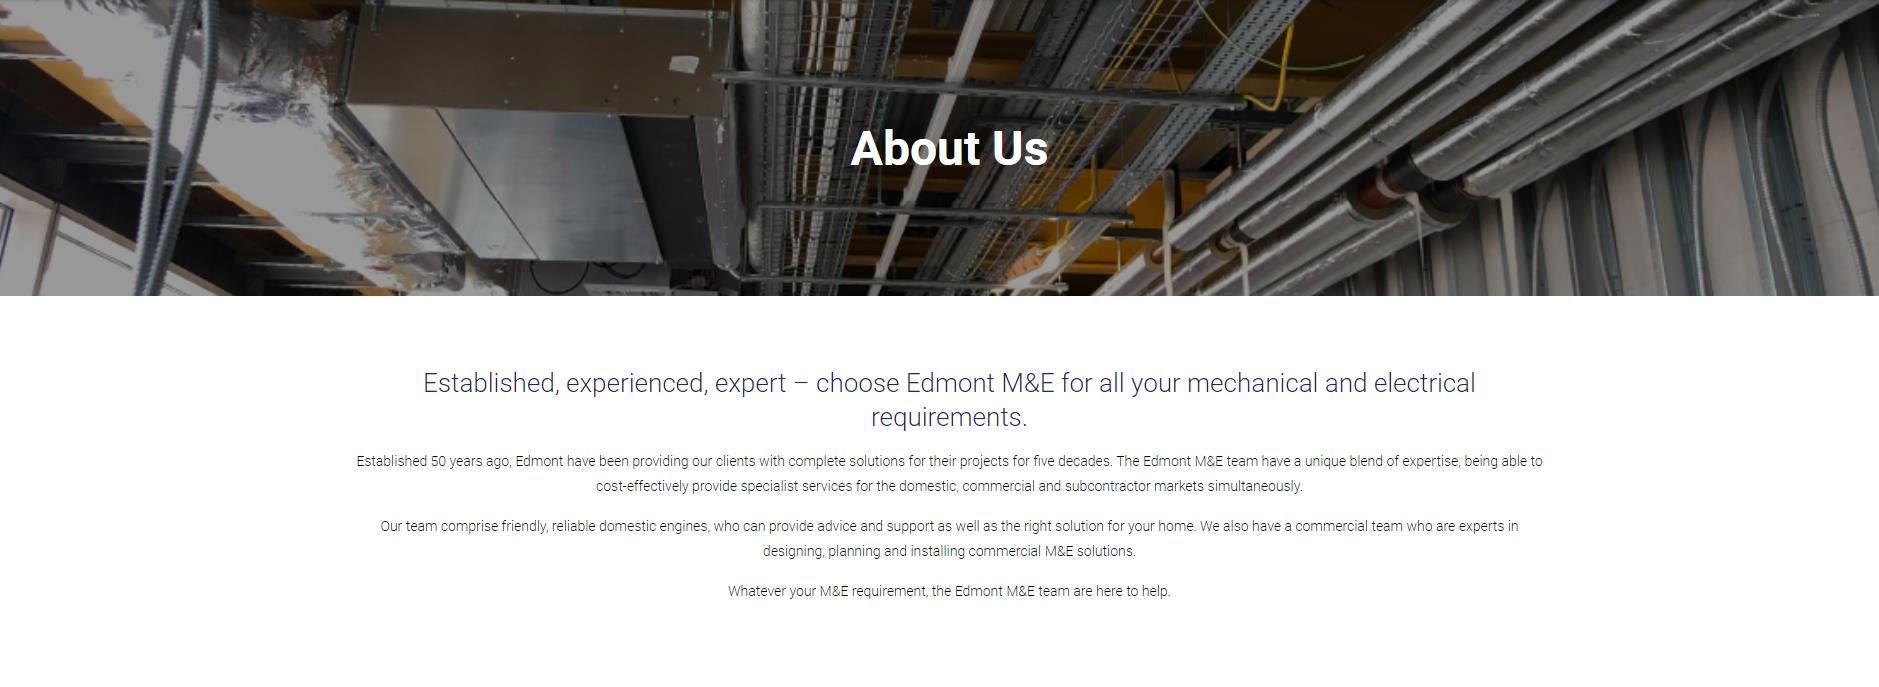 Edmont M&E Services Ltd